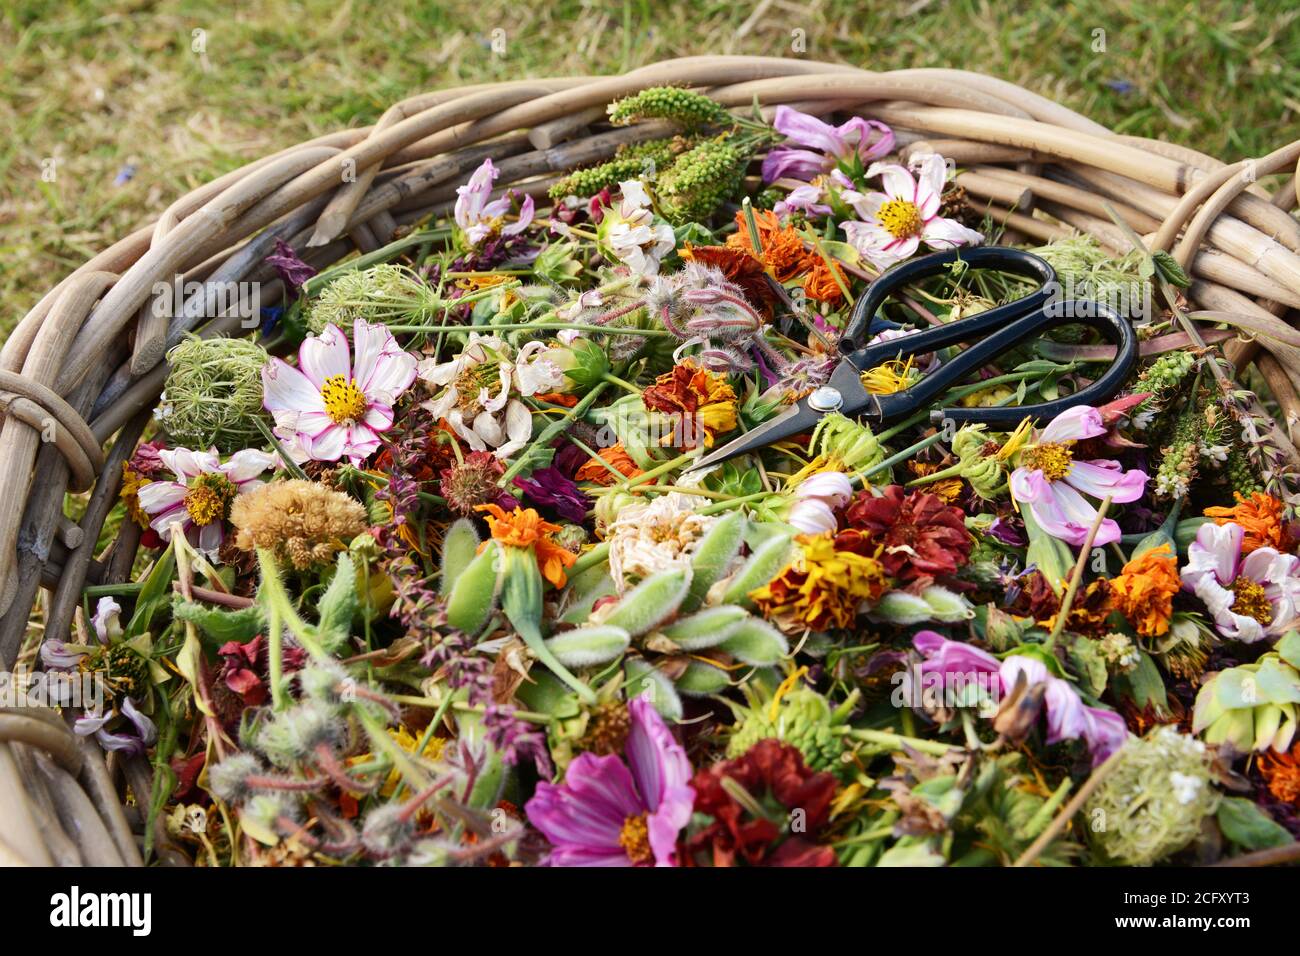 Panier tissé du jardinier rempli de têtes de fleurs coupées décolorées avec ciseaux fleuristes rétro sur fleurs colorées Banque D'Images